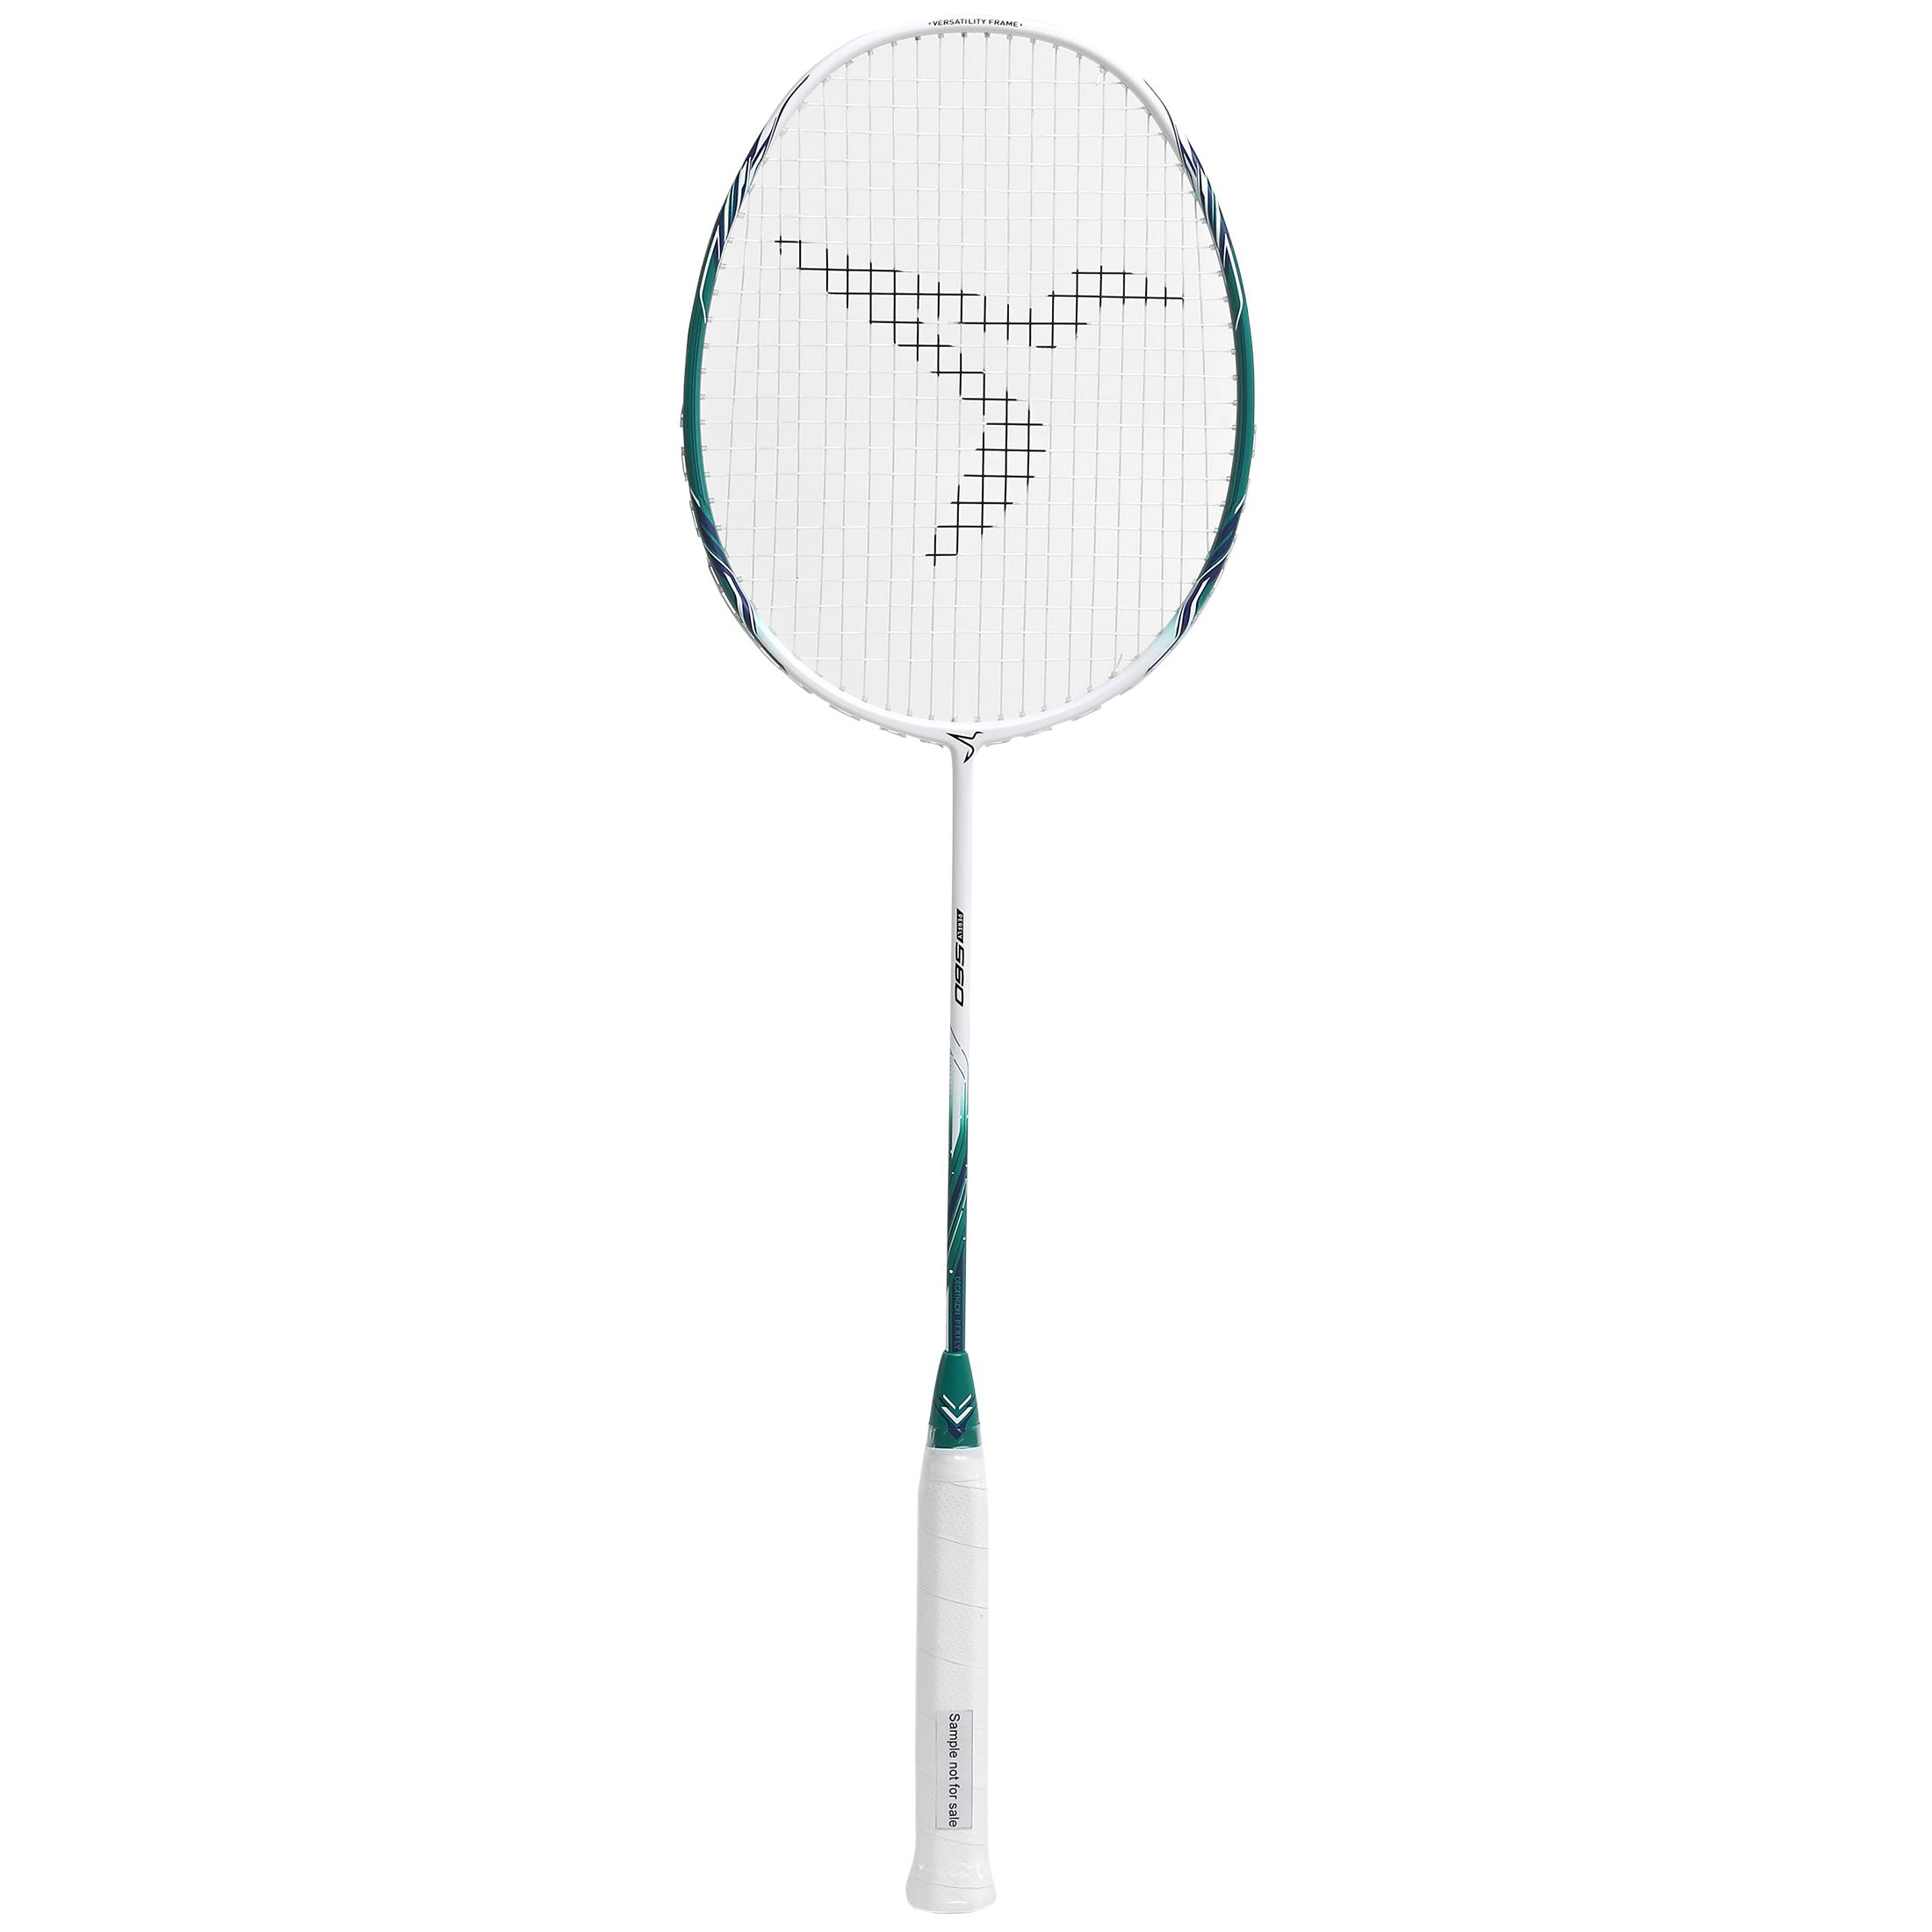 decathlon artengo badminton racket br 820